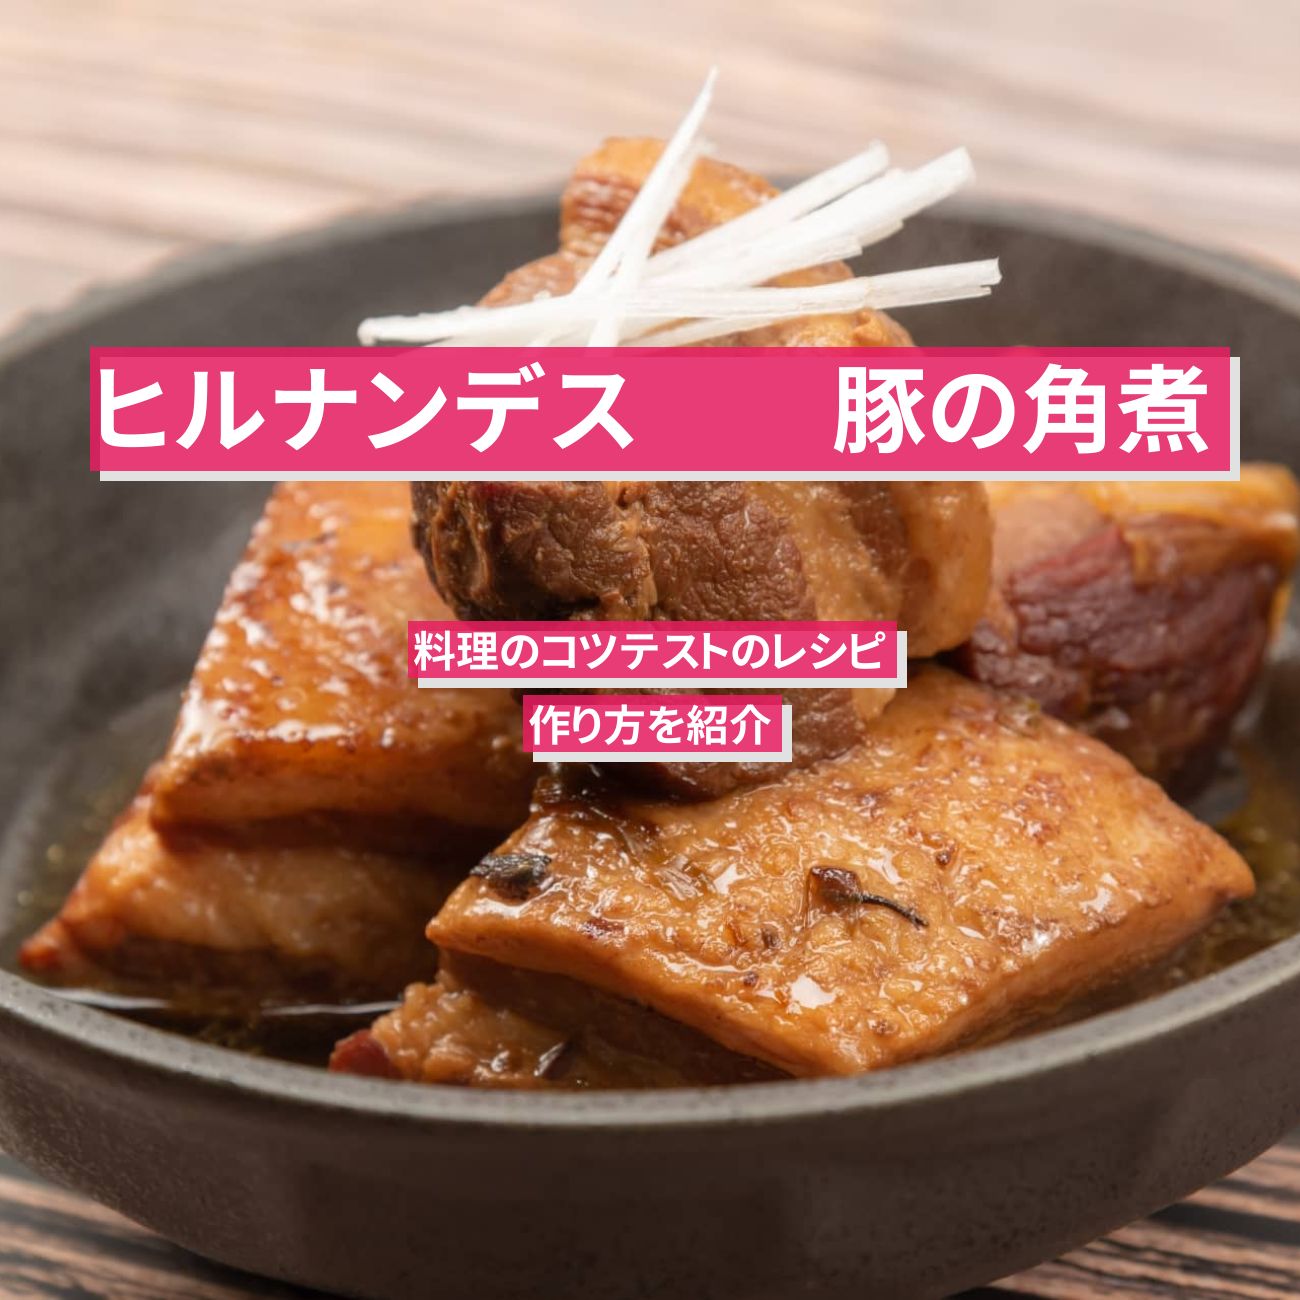 【ヒルナンデス】『豚の角煮』料理のコツテストのレシピ・作り方を紹介